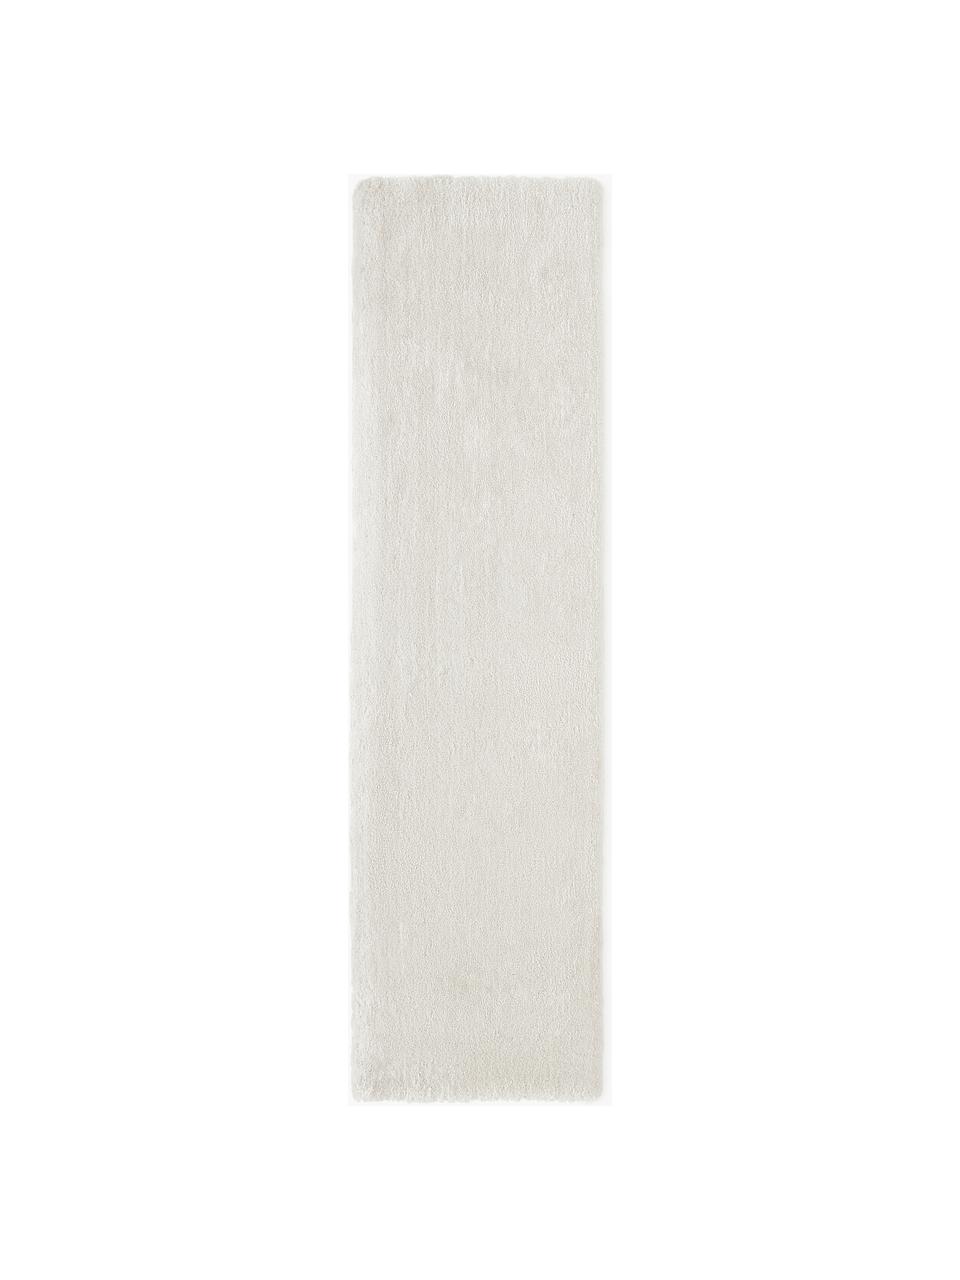 Tapis d'entrée moelleux à poils longs Leighton, Blanc cassé, larg. 80 x long. 200 cm